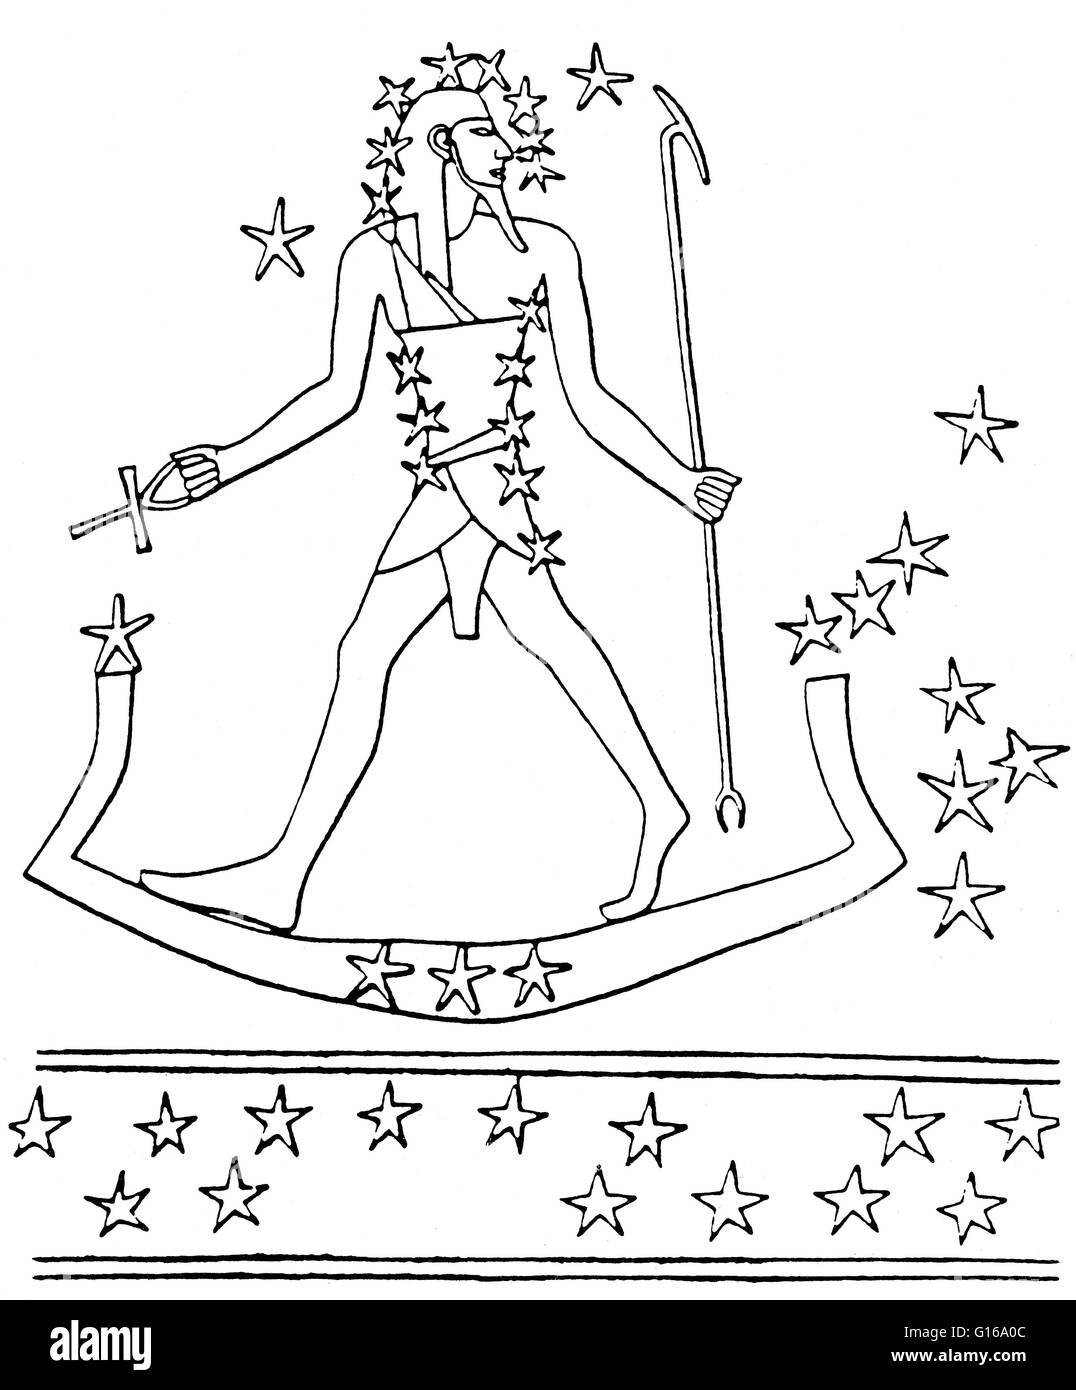 Osiris-Orion voyages à travers le ciel sur le bateau sacré (étoile de Lepus). À partir d'une carte du ciel dans la tombe de Montemhet à Louxor, vers 650 avant JC. Les étoiles d'Orion ont été associés à l'Osiris, le dieu-soleil de la renaissance et de l'au-delà, par les anciens Égyptiens. Orion Banque D'Images